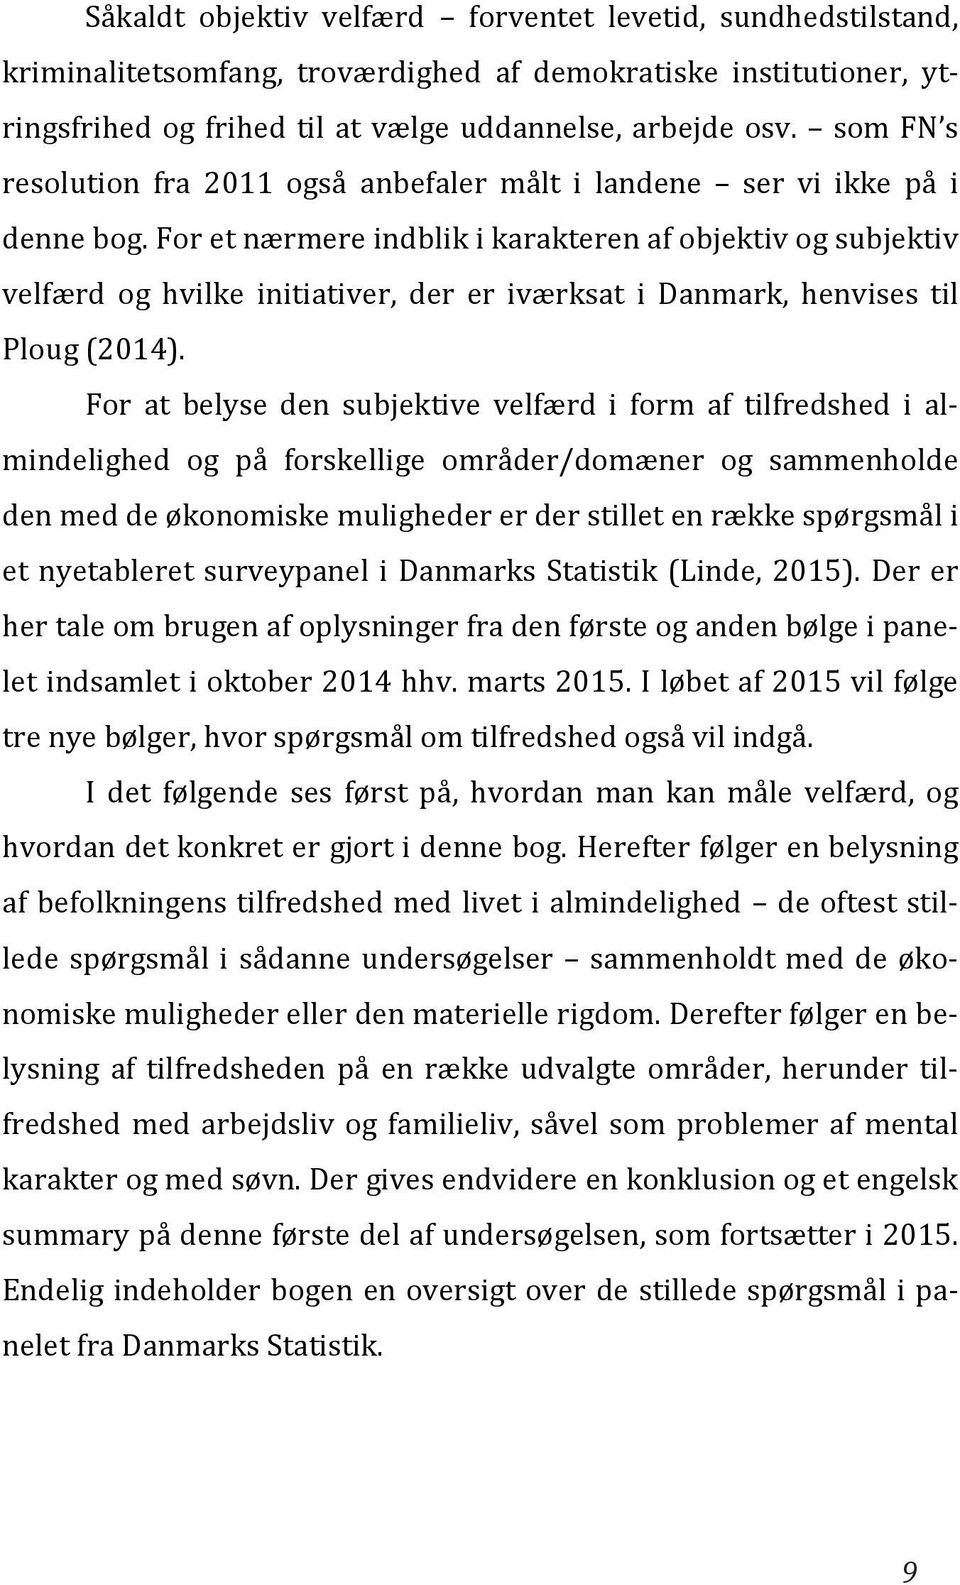 For et nærmere indblik i karakteren af objektiv og subjektiv velfærd og hvilke initiativer, der er iværksat i Danmark, henvises til Ploug (2014).